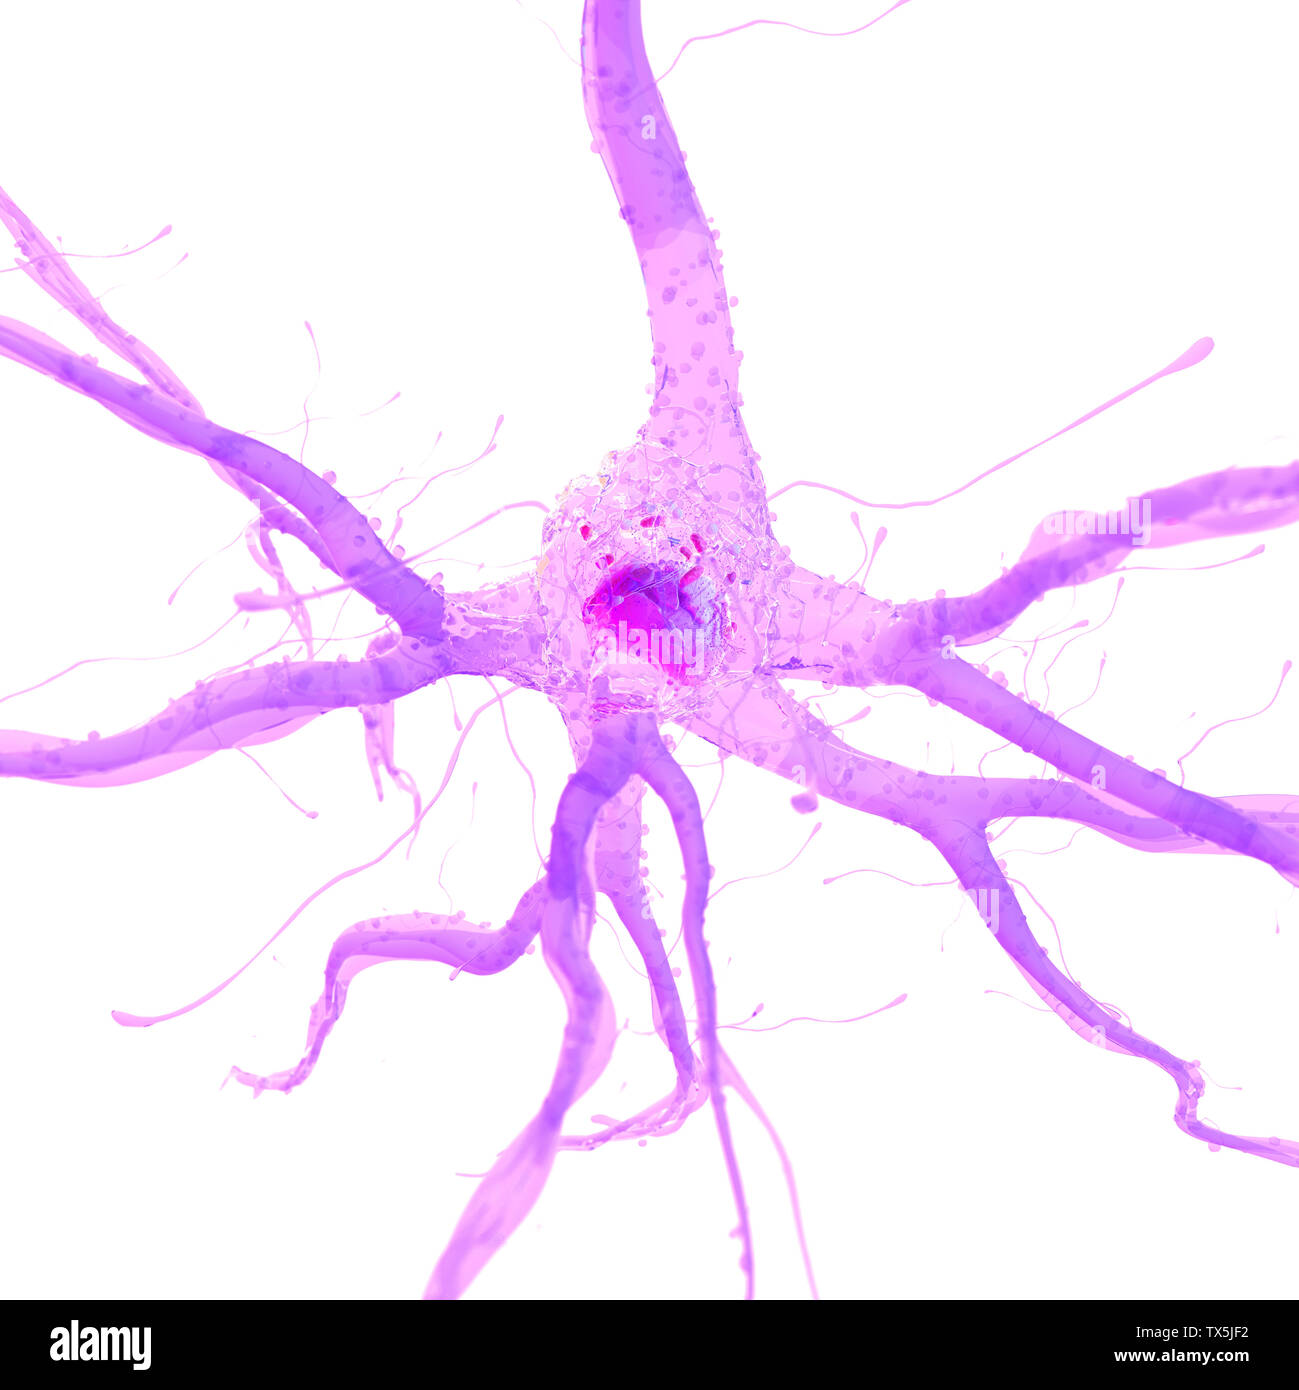 3D Rendering accurato dal punto di vista medico illustrazione di una cellula nervosa Foto Stock